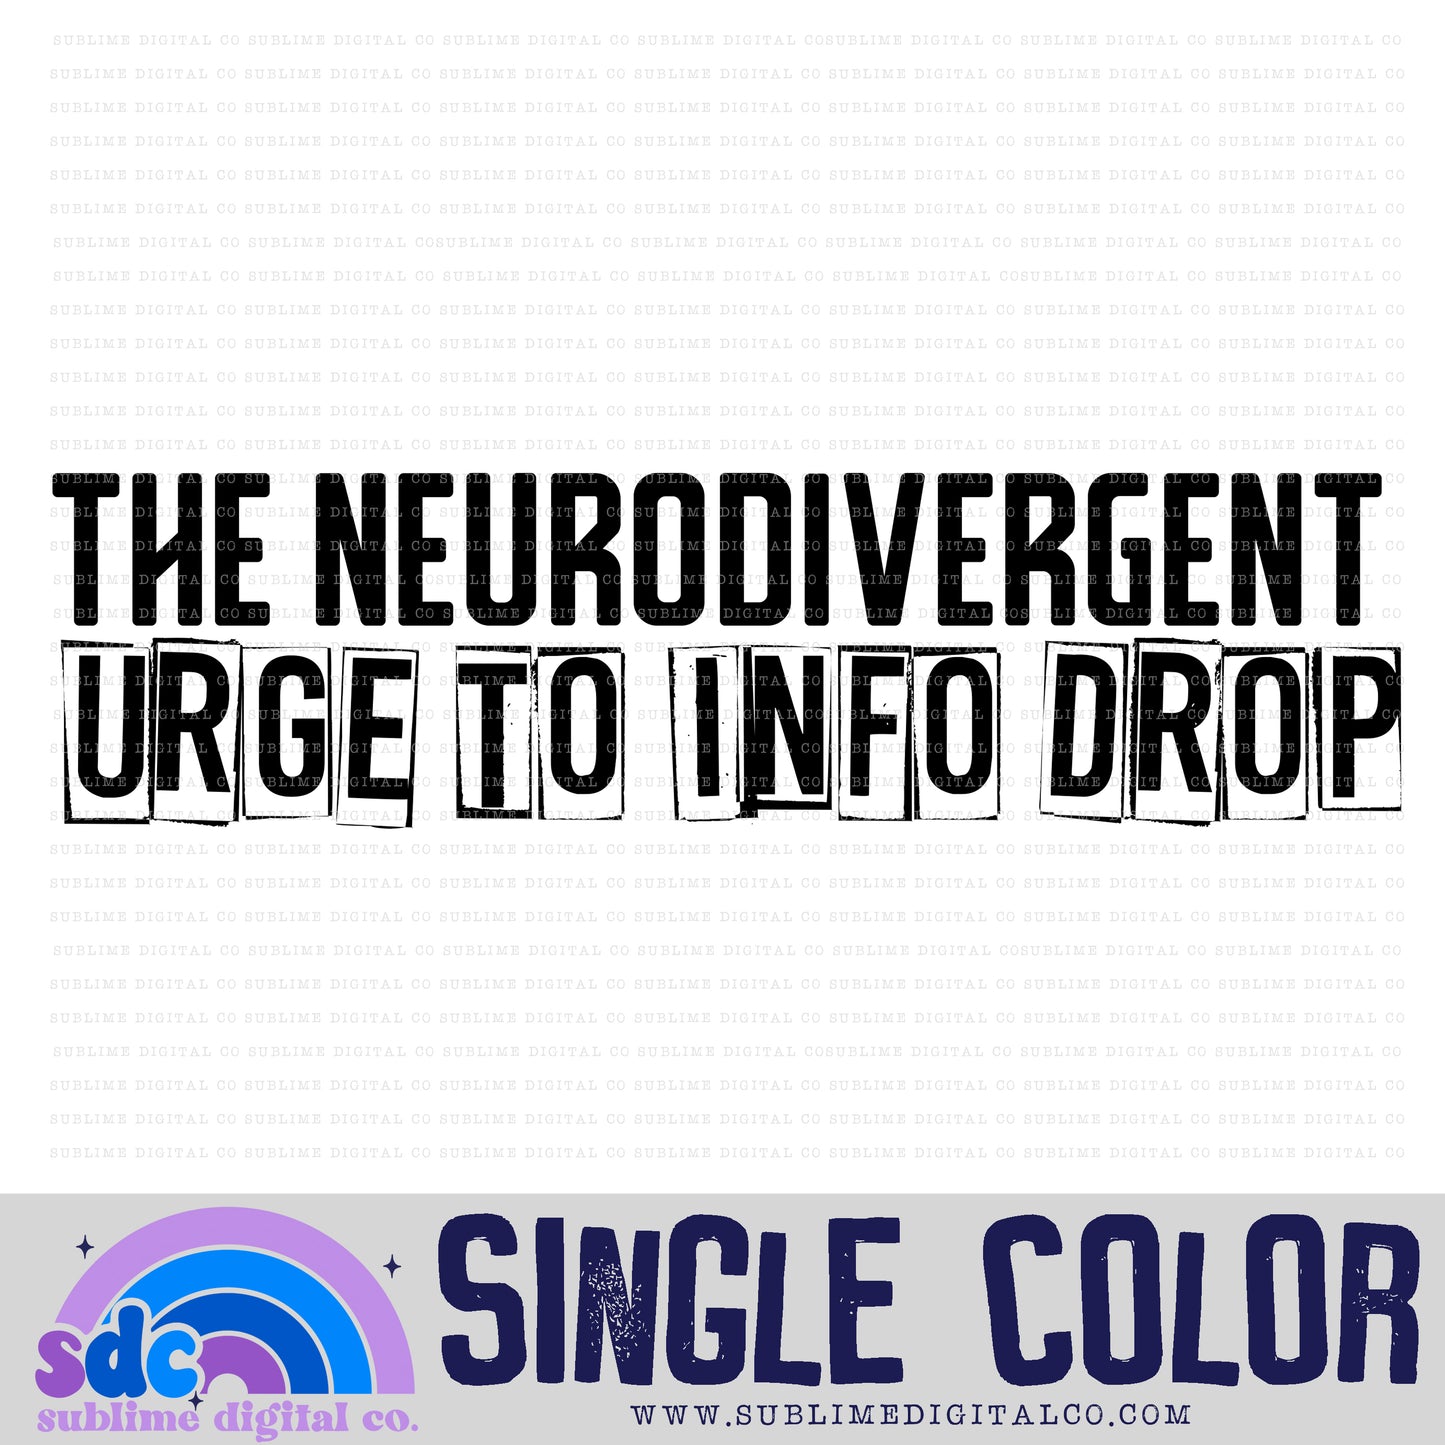 Info Drop • Single Color • Neurodivergent • Instant Download • Sublimation Design